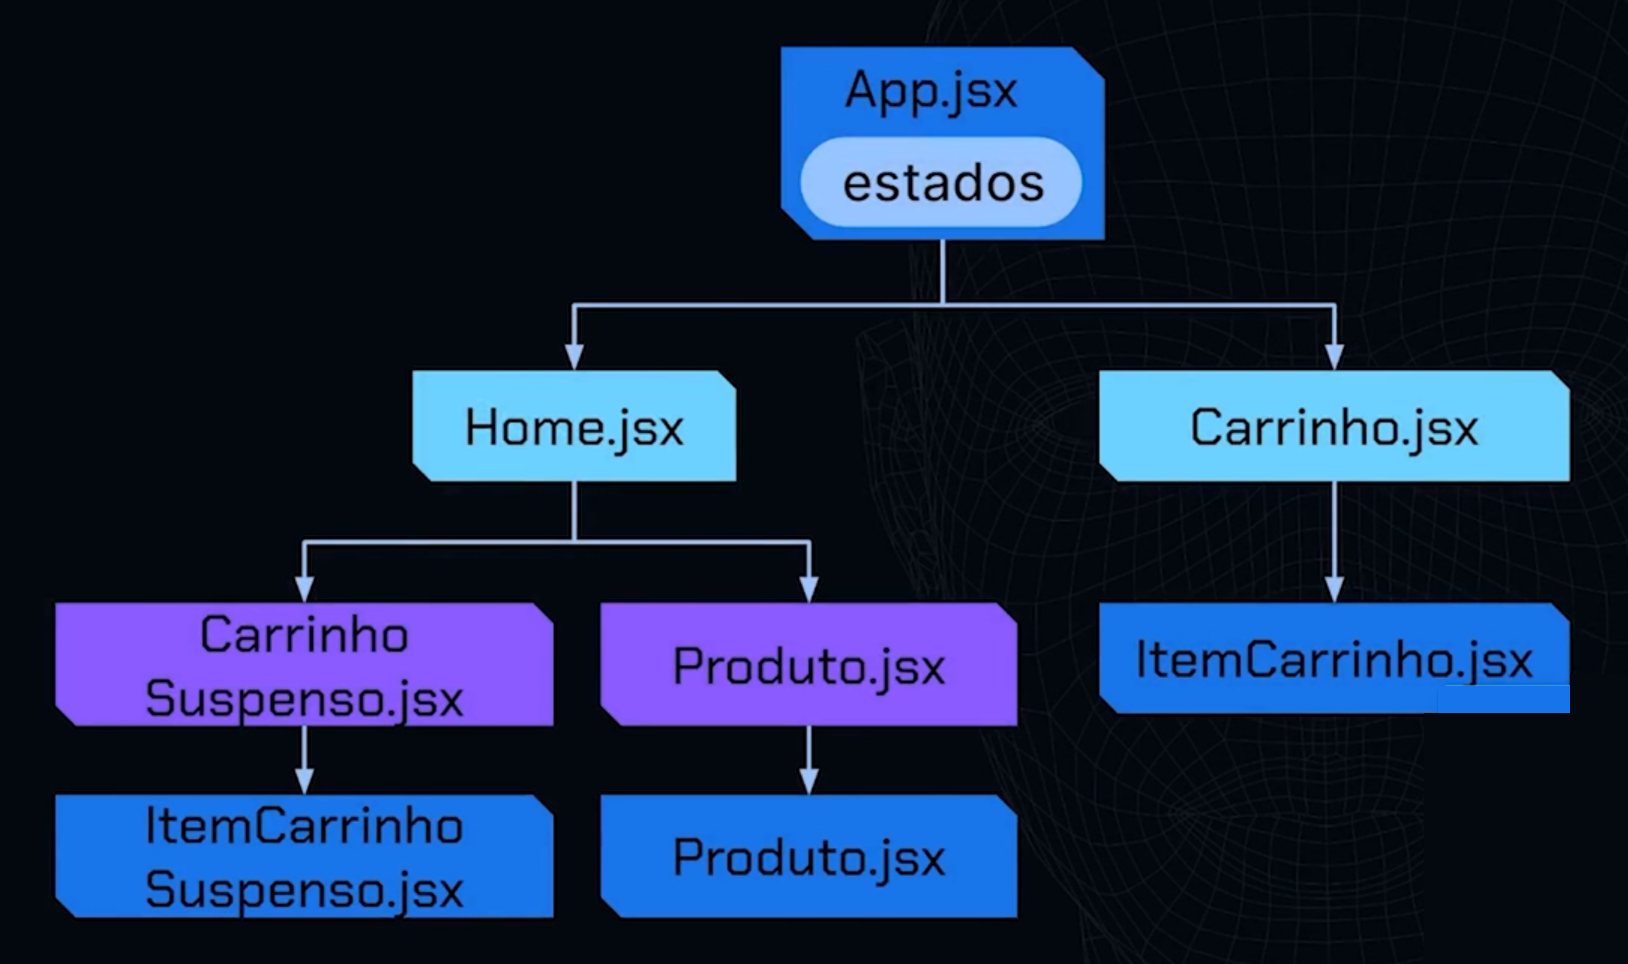 Diagrama de componentes de um aplicativo, com fundo preto. No topo, o componente 'App.jsx estados' em azul, conecta-se a 'Home.jsx' que, por sua vez, se conecta aos componentes 'CarrinhoSuspenso.jsx' e 'Produto.jsx' em roxo; e a 'Carrinho.jsx'.'Carrinho.jsx' se conecta a 'ItemCarrinho.jsx' em azul na base. Há um componente adicional 'ItemCarrinhoSuspenso.jsx' conectado a 'CarrinhoSuspenso.jsx', bem como um componente 'Produto.jsx' conectado a 'Produto.jsx'.